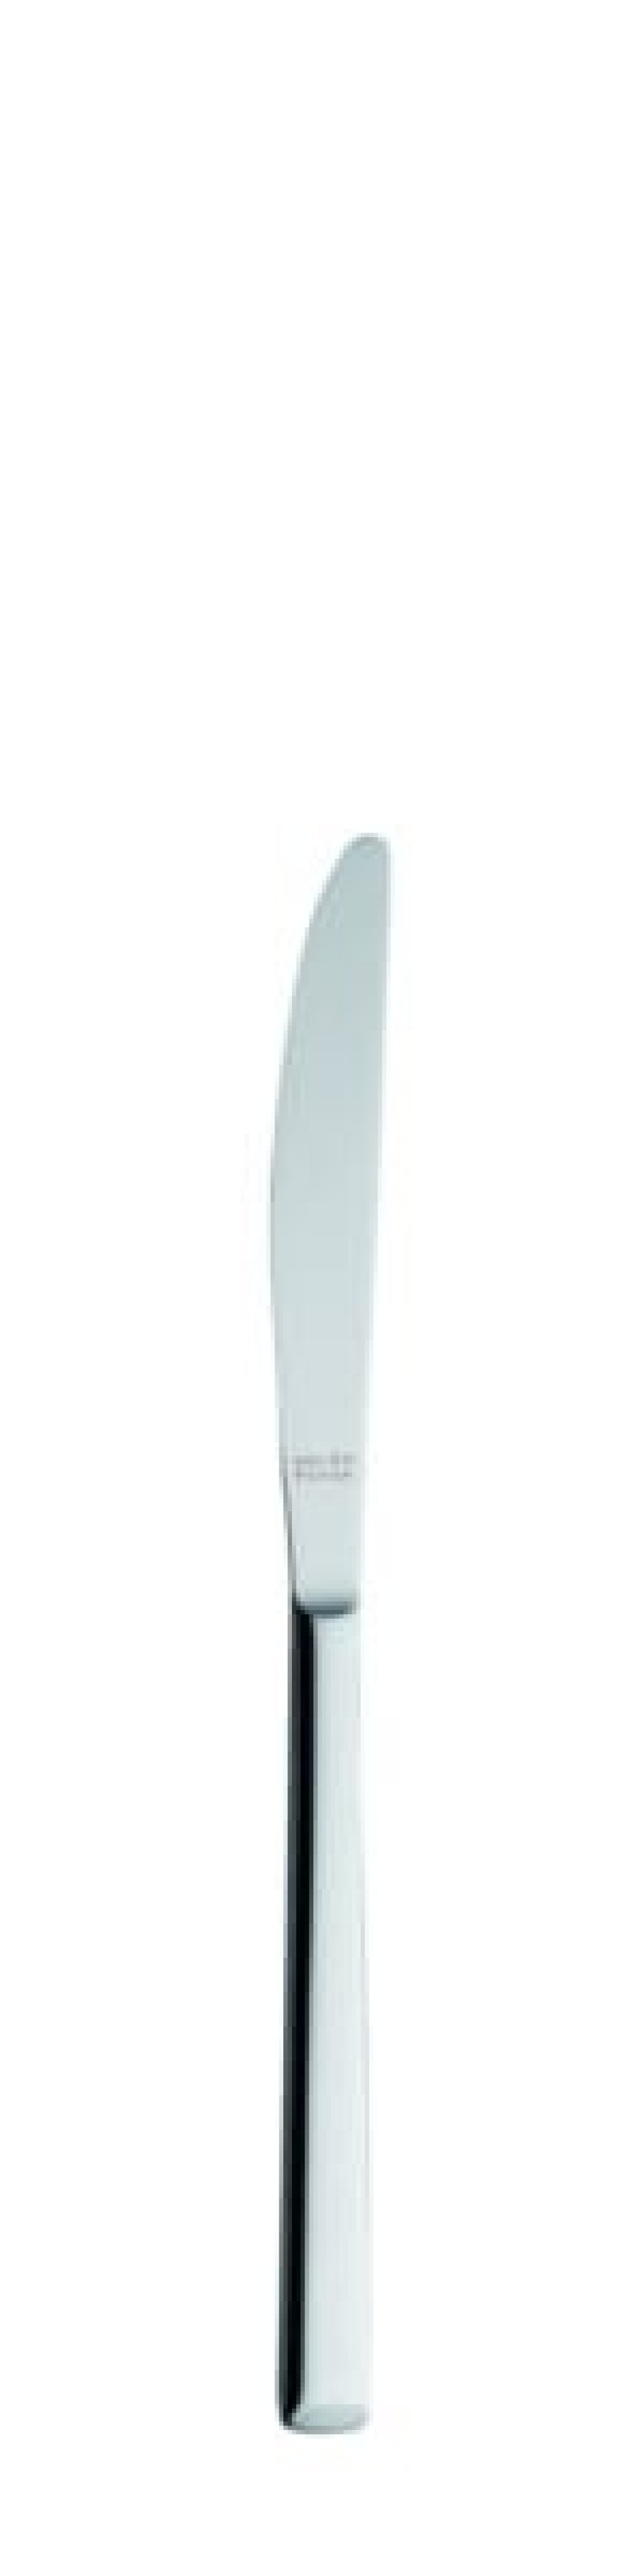 Nóż deserowy Laura 199 mm - Solex w grupie Nakrycie stołu / Sztućce / Noże w The Kitchen Lab (1284-21495)